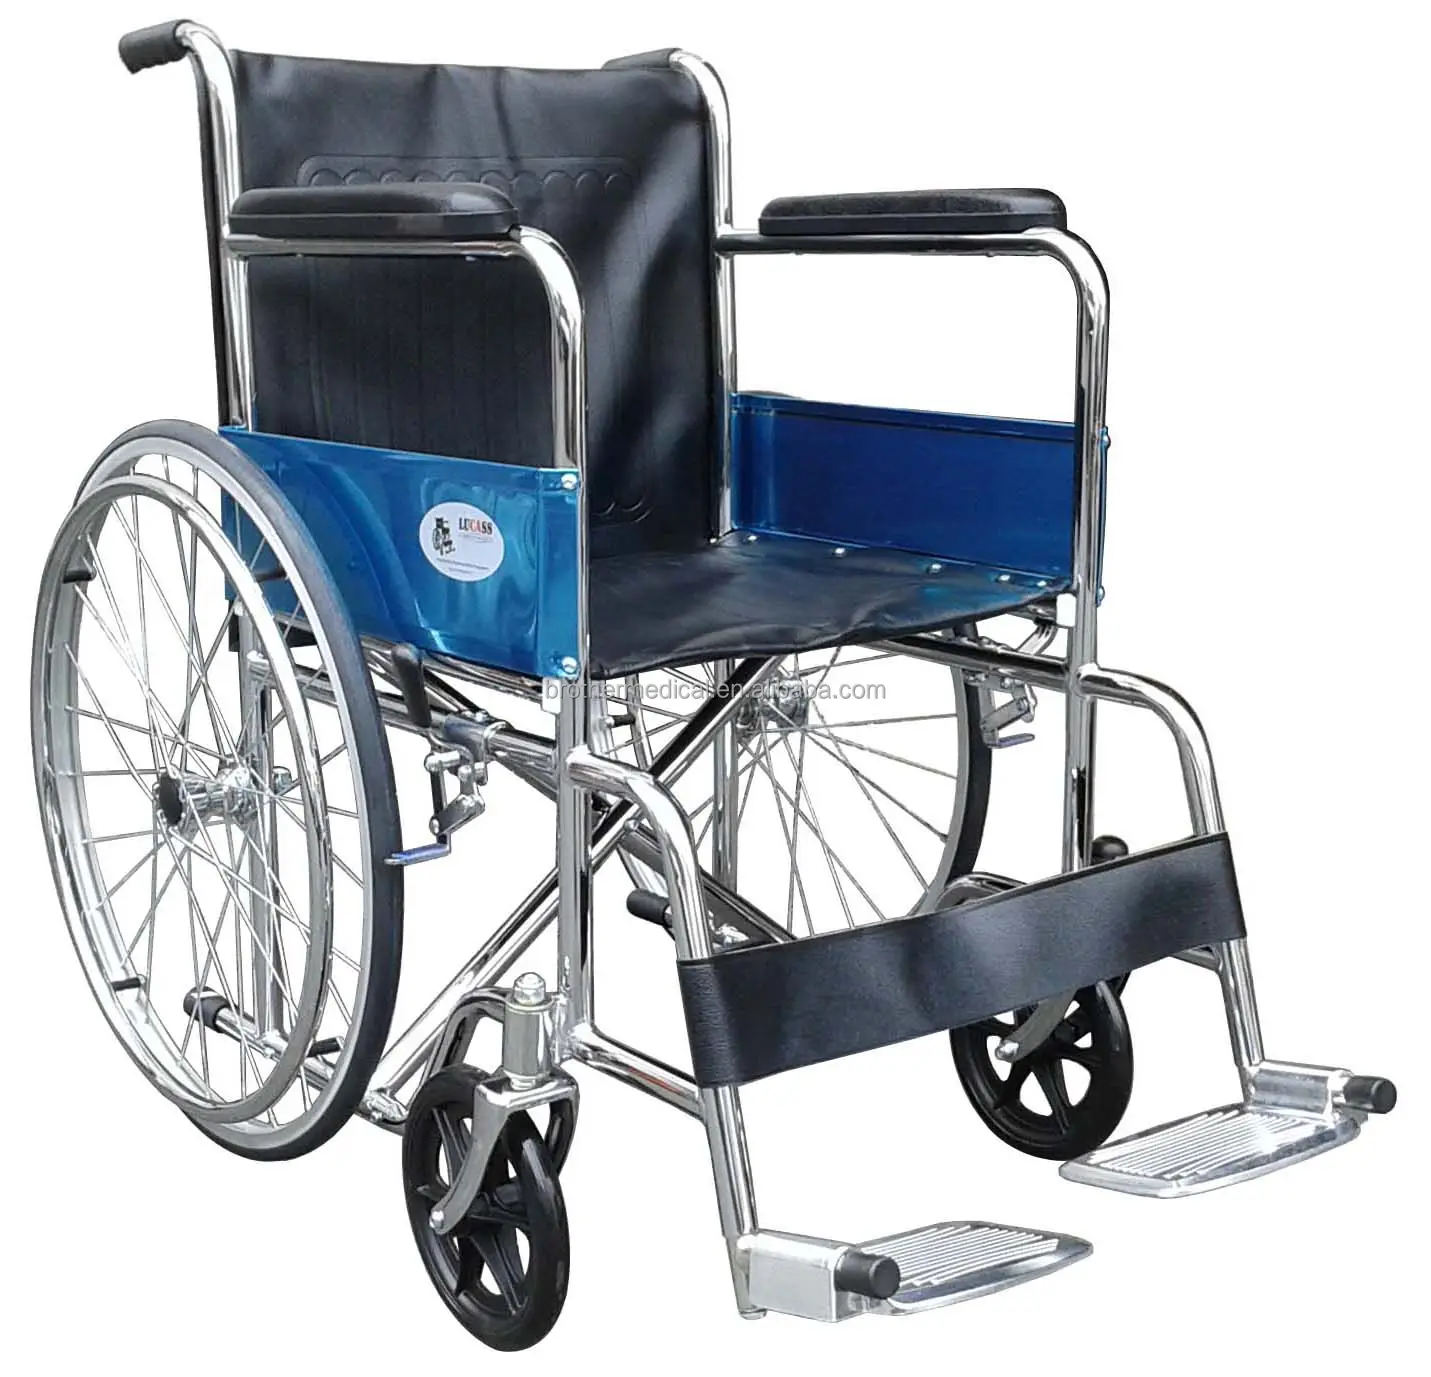 لوازم العلاج التأهيلي sillas دي رويدس 809 الأساسية دليل طوي خفيفة الوزن كرسي متحرك المعوقين رخيصة الثمن